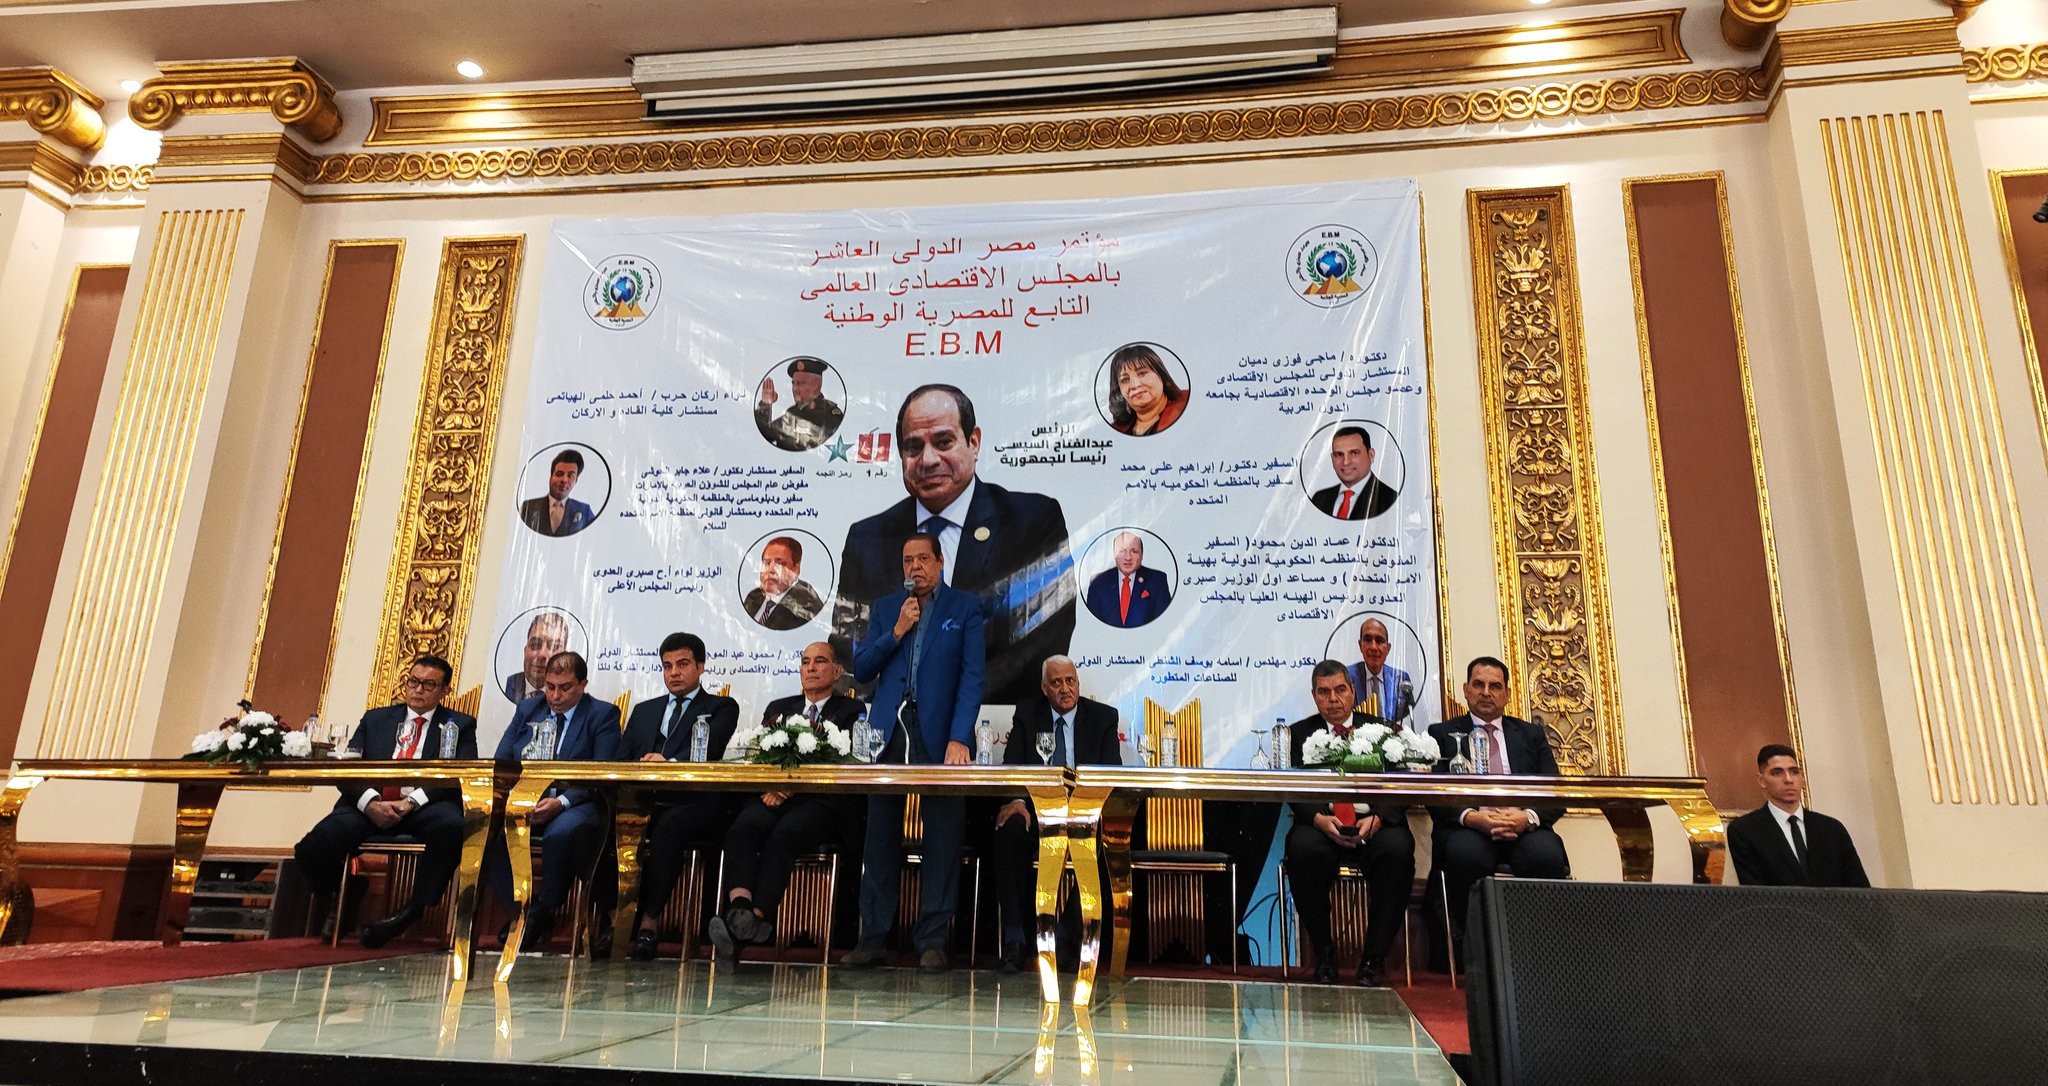 Embajada de Venezuela en Egipto participó en Conferencia del Consejo Económico Mundial para el Intercambio en el Mundo Árabe y África